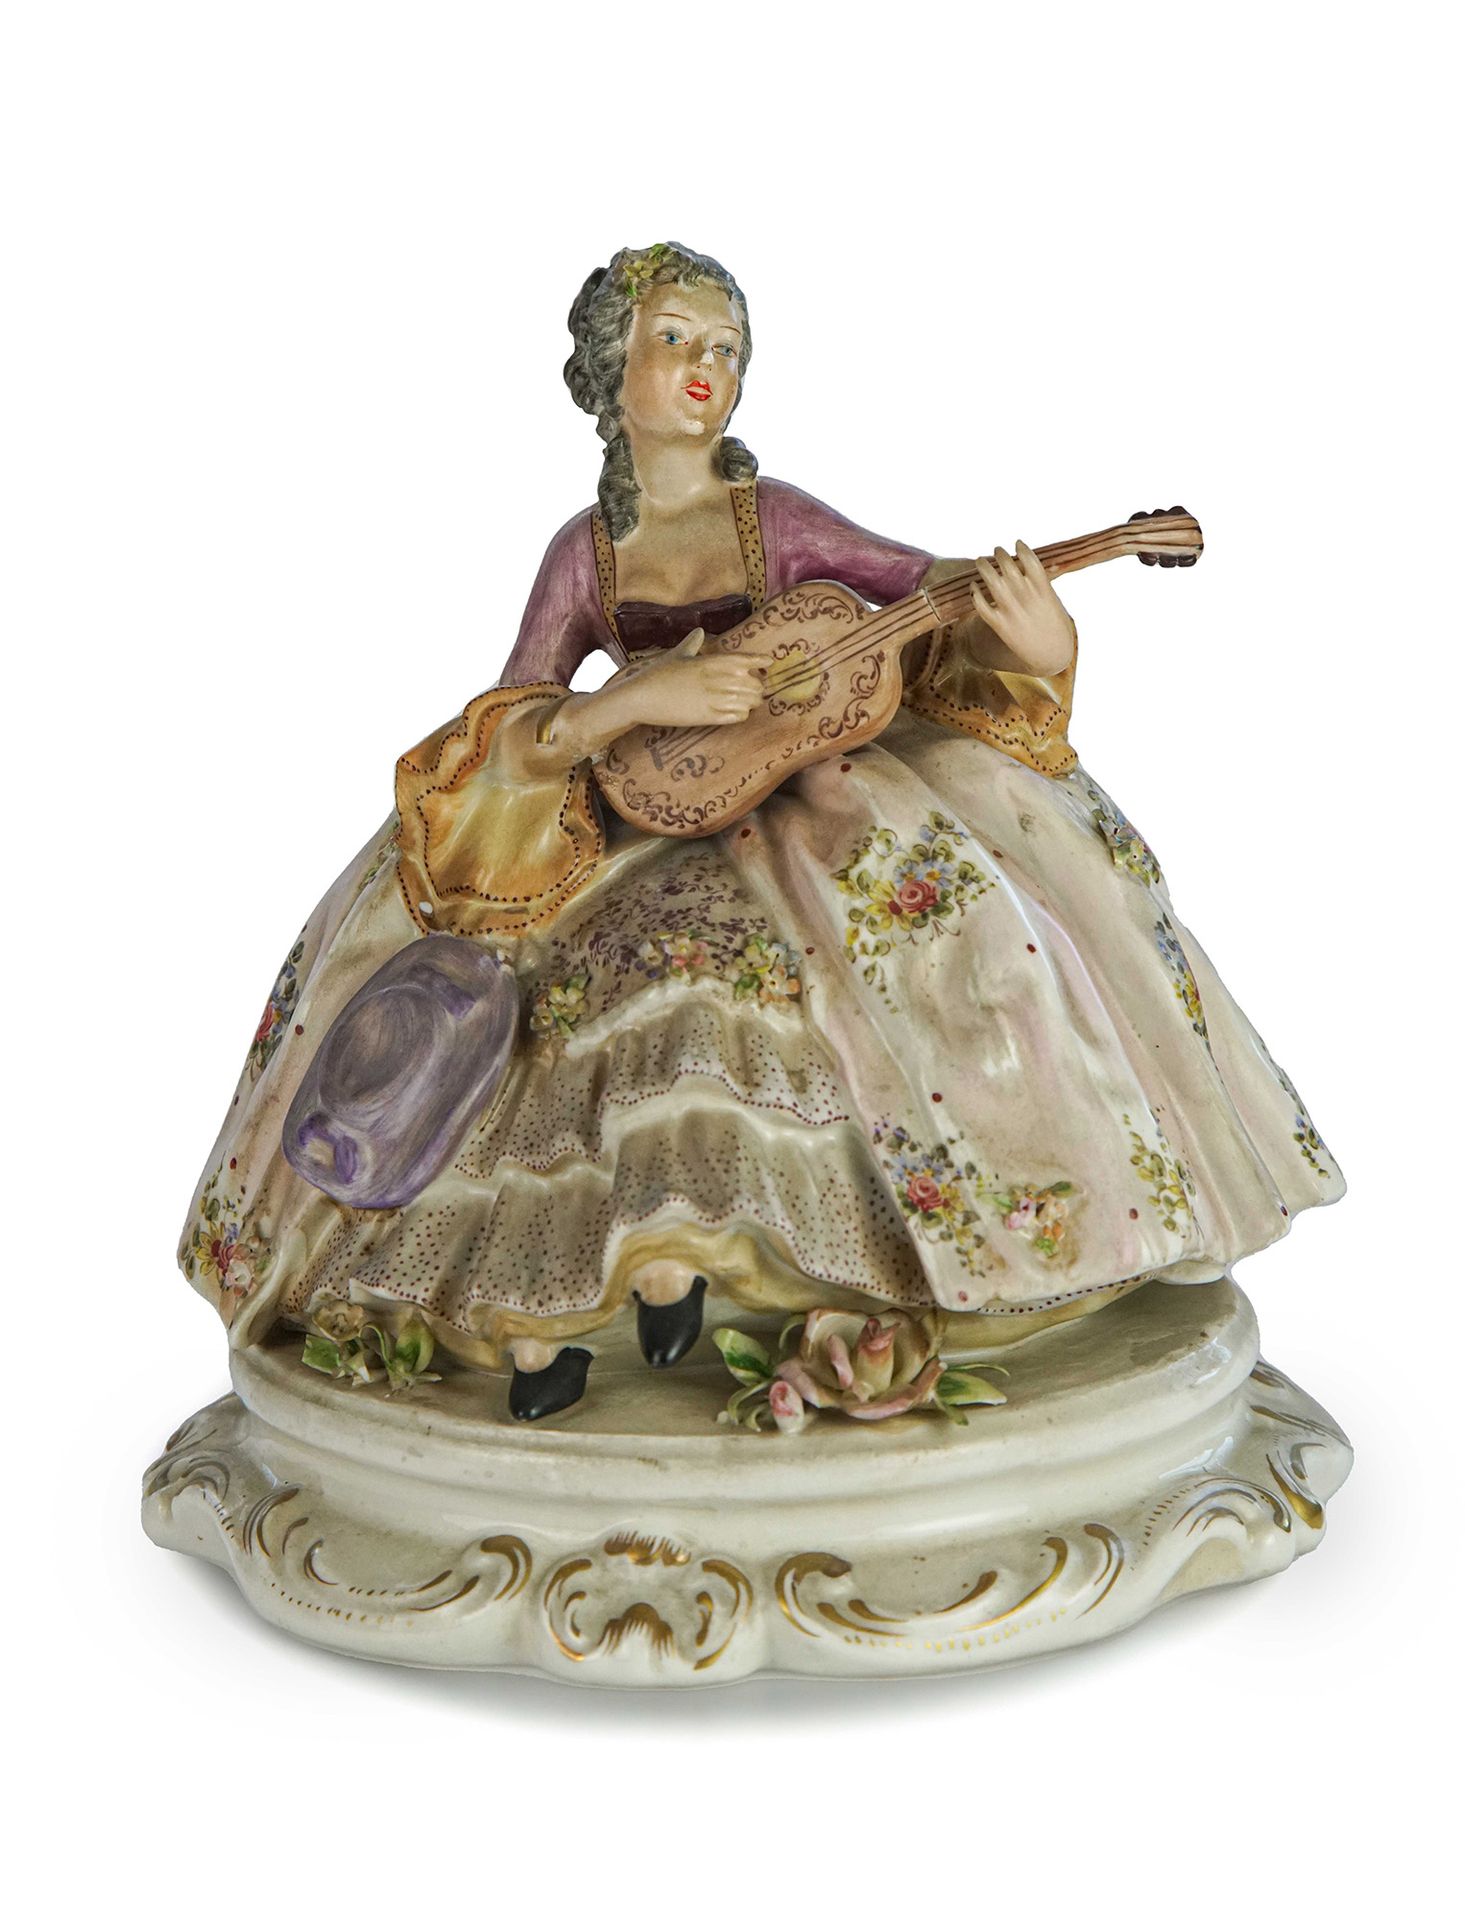 Null 描绘一位女士弹奏吉他的雕像

多色卡波迪蒙特型瓷器

高18厘米

小休